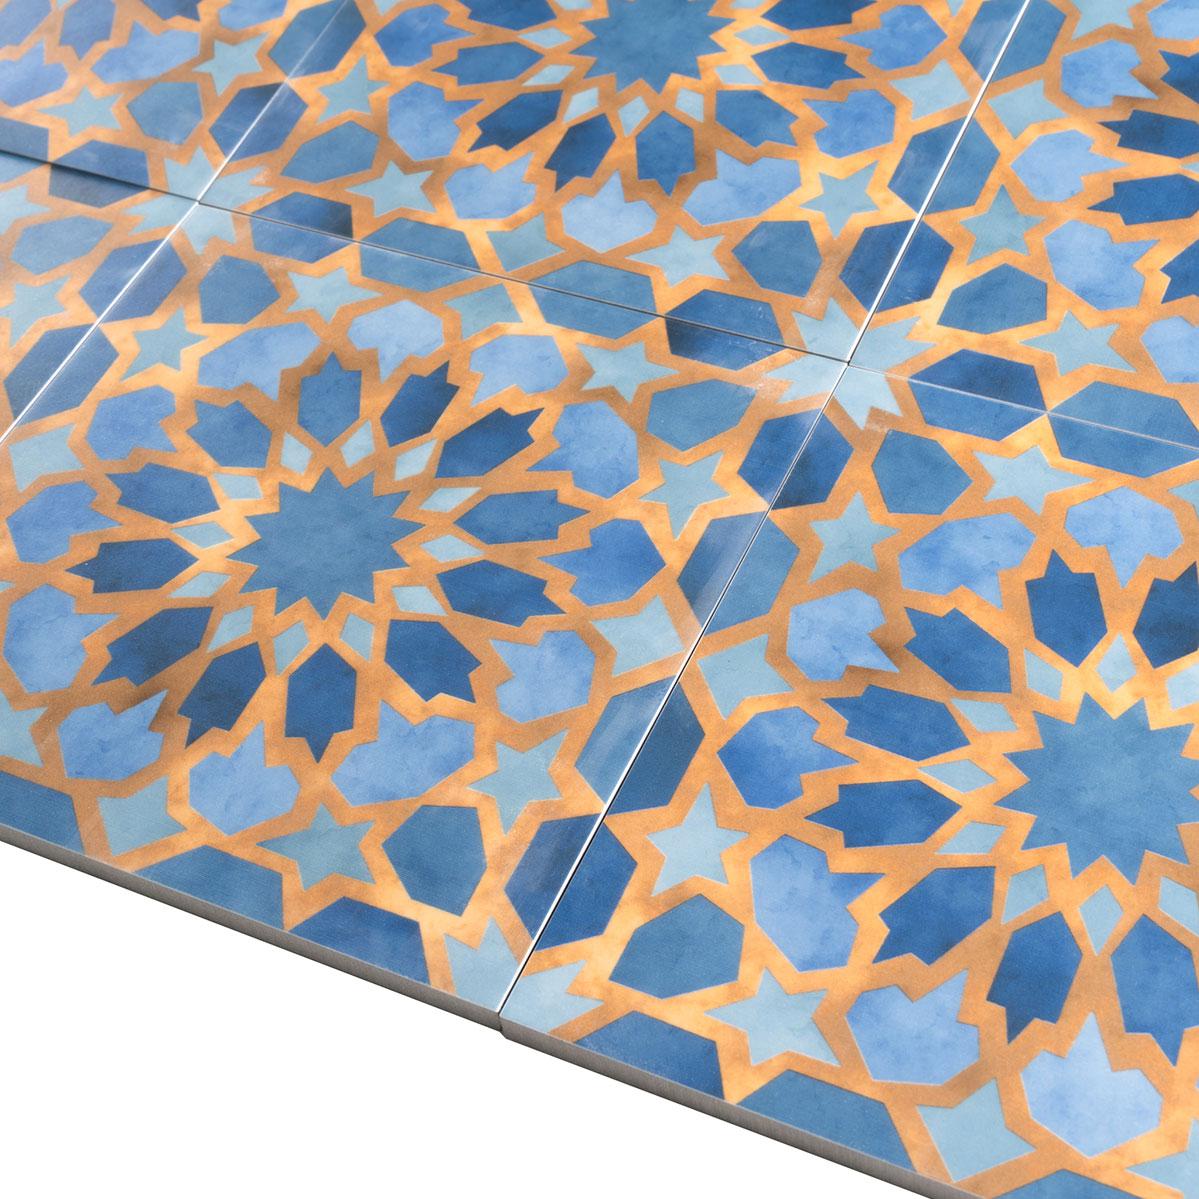 Amira Samarkand Blue Patterned Porcelain Tile